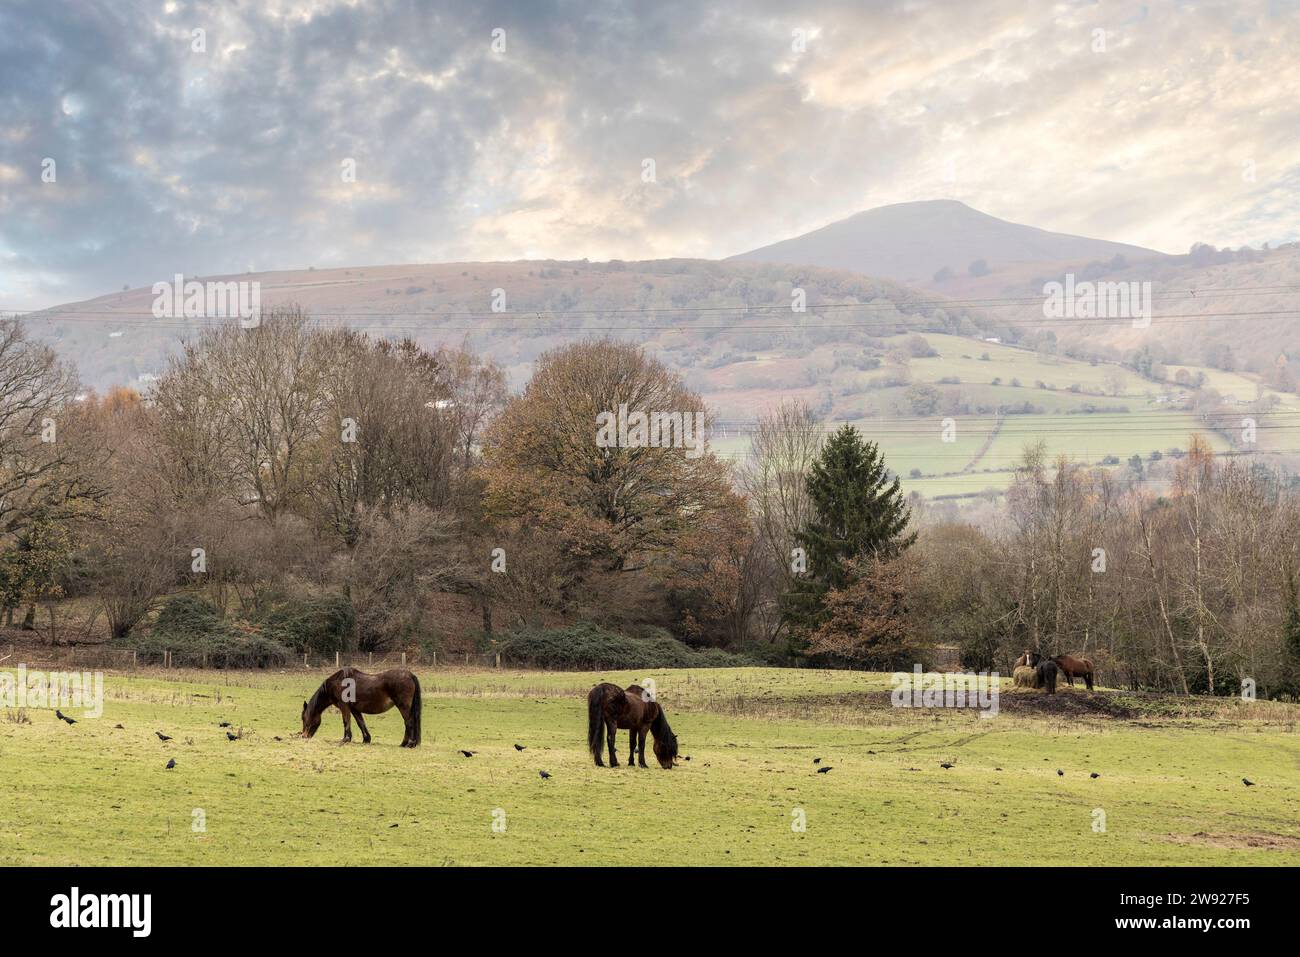 Chevaux broutant dans Winder avec Sugar Loaf montagne en distance, Llanfoist, Abergavenny, pays de Galles, Royaume-Uni Banque D'Images